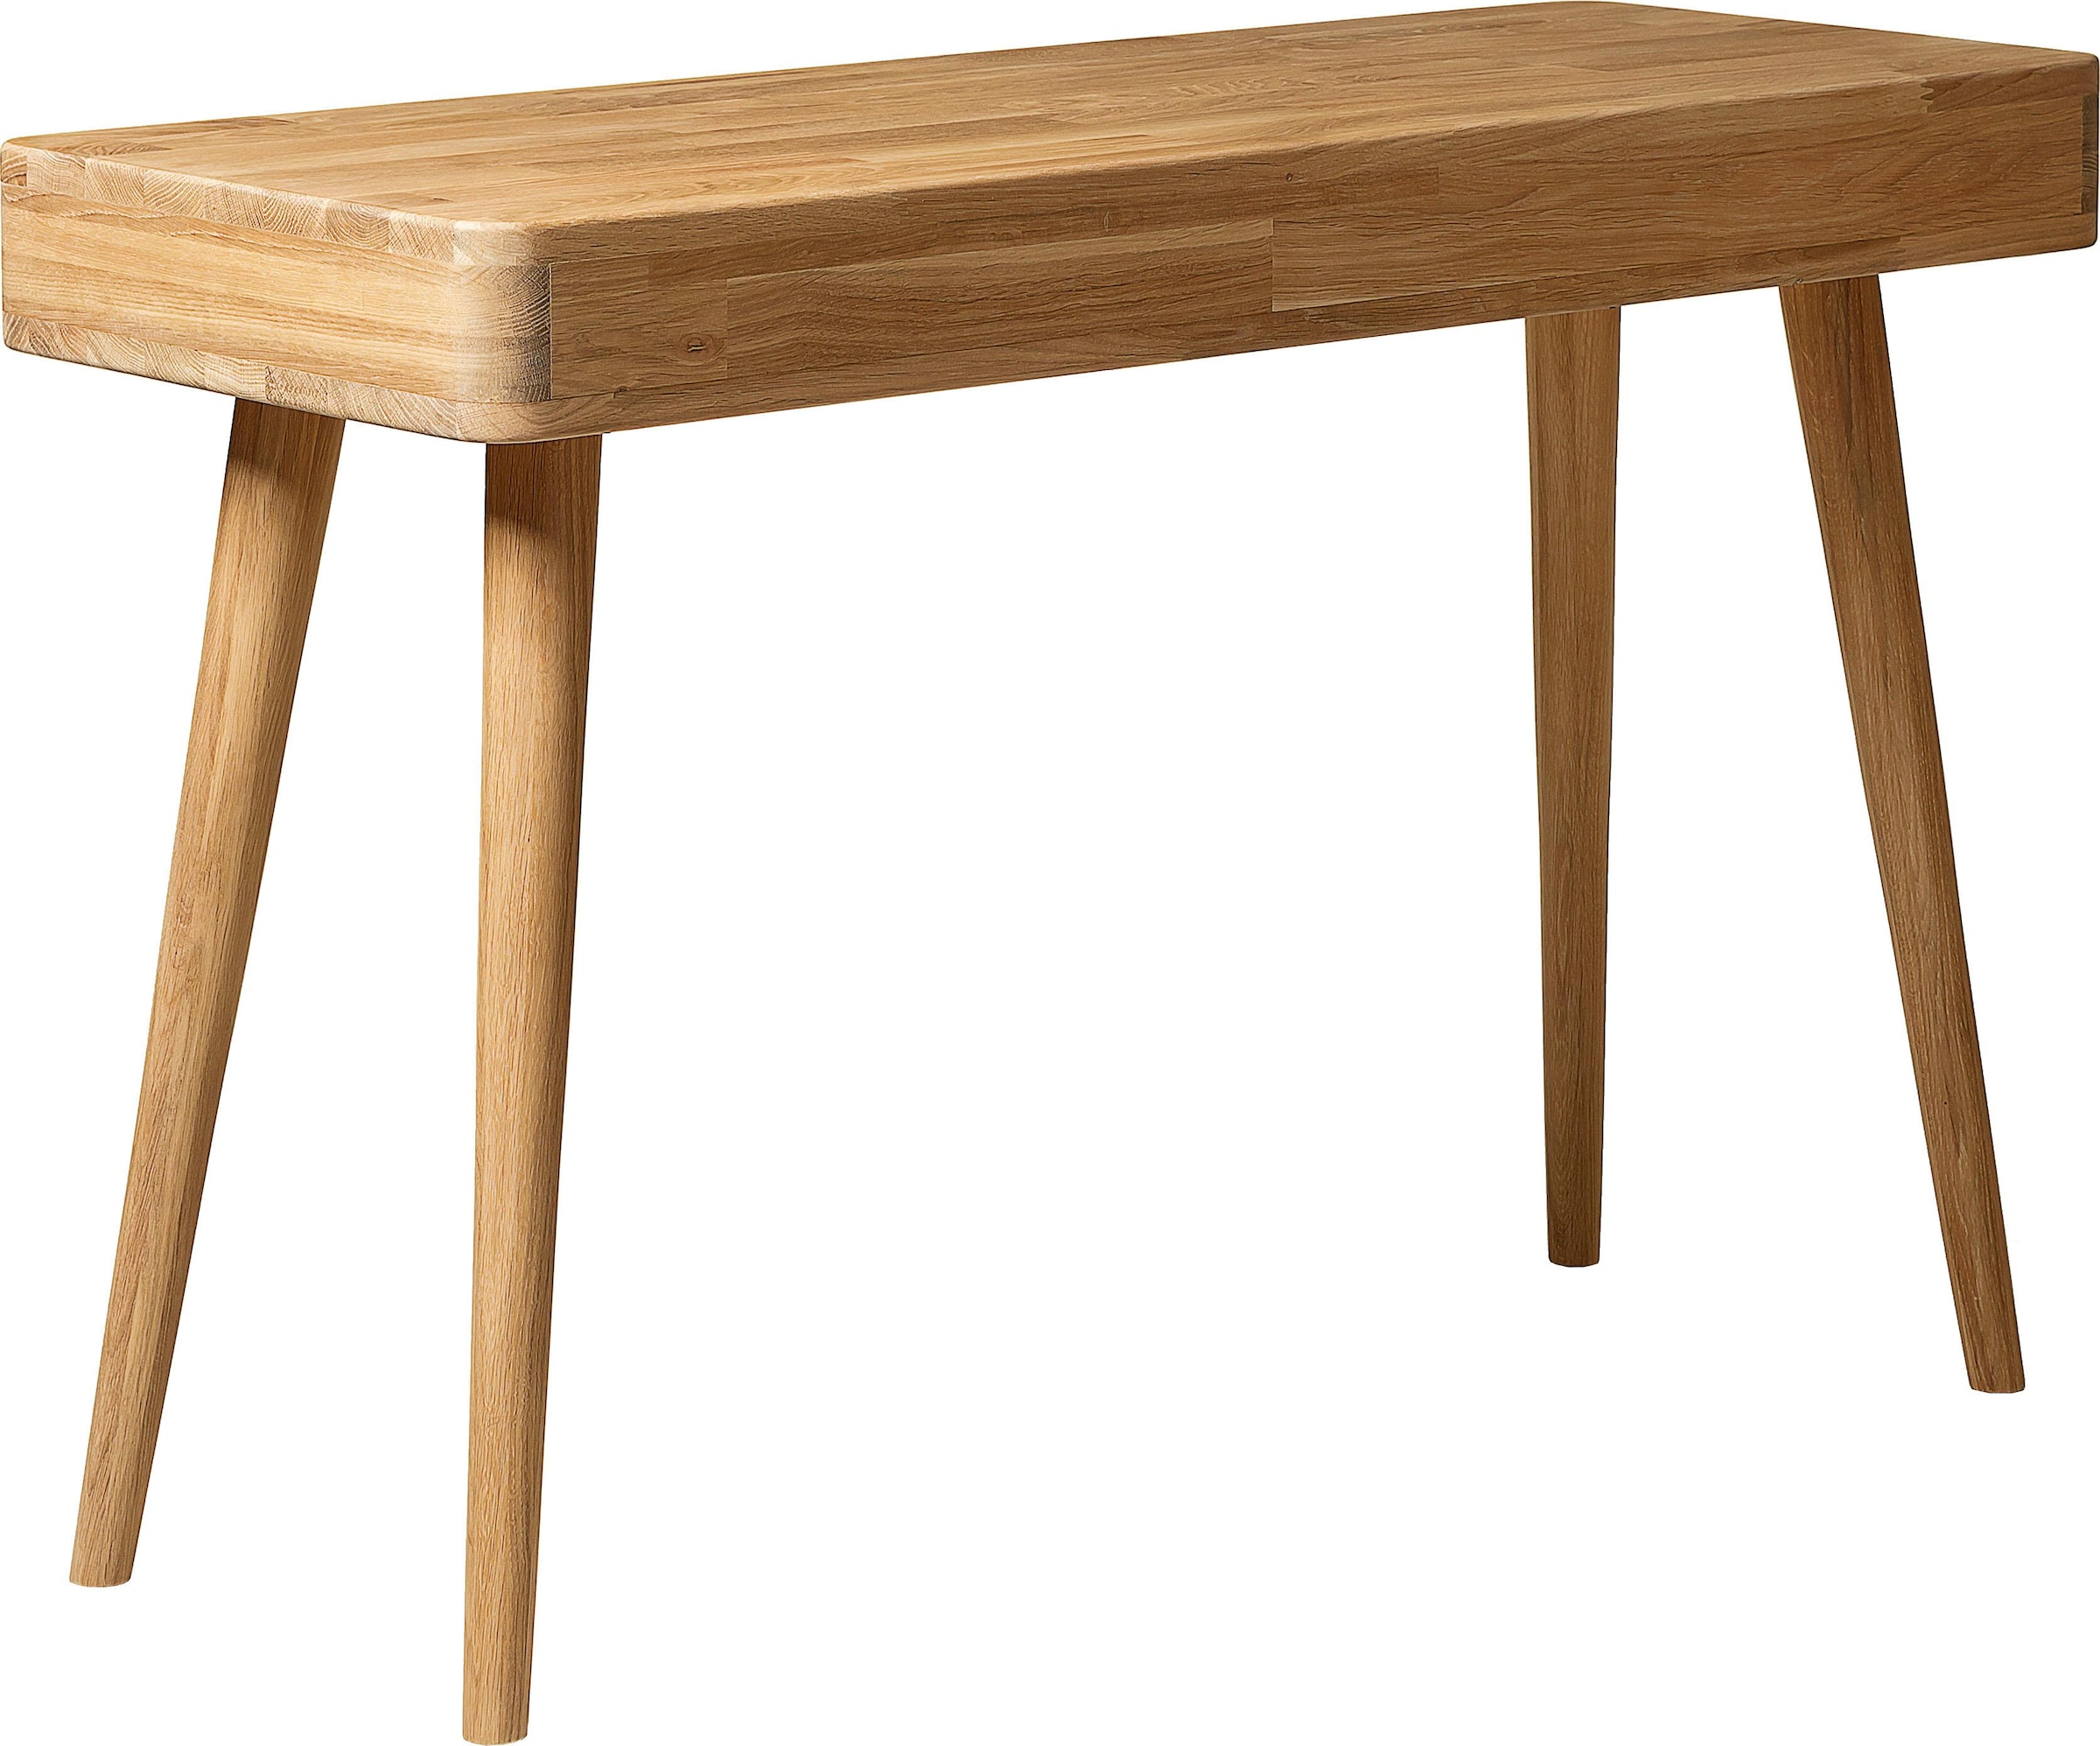 Home affaire Schreibtisch »Scandi«, aus Eichenholz, mit vielen Stauraummöglichkeiten, Breite 110 cm